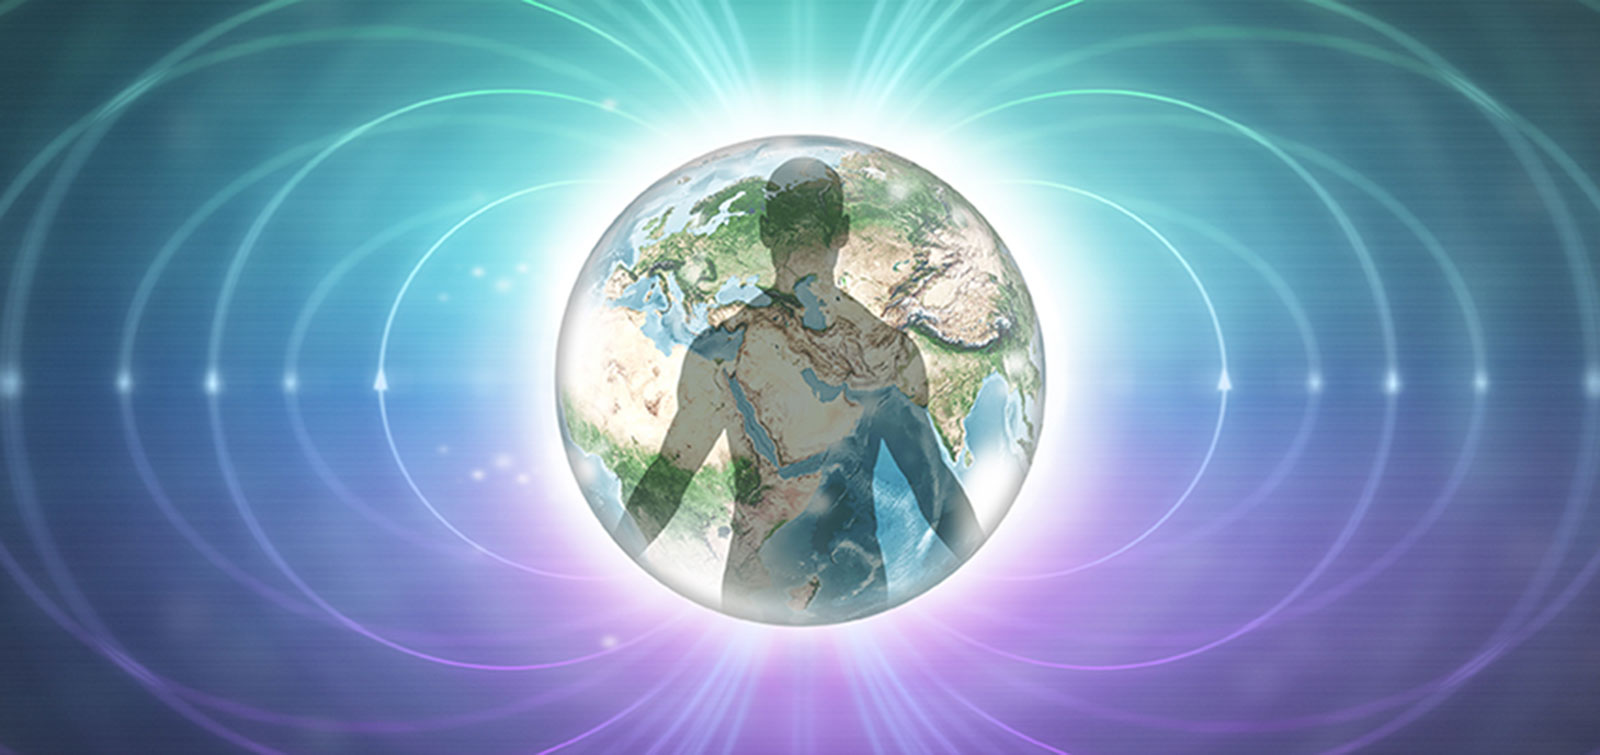 Corpo humano no centro do planeta Terra, rodeado de energia circular que expande ao campo quântico, em tons de azul, verde, branco e roxo.